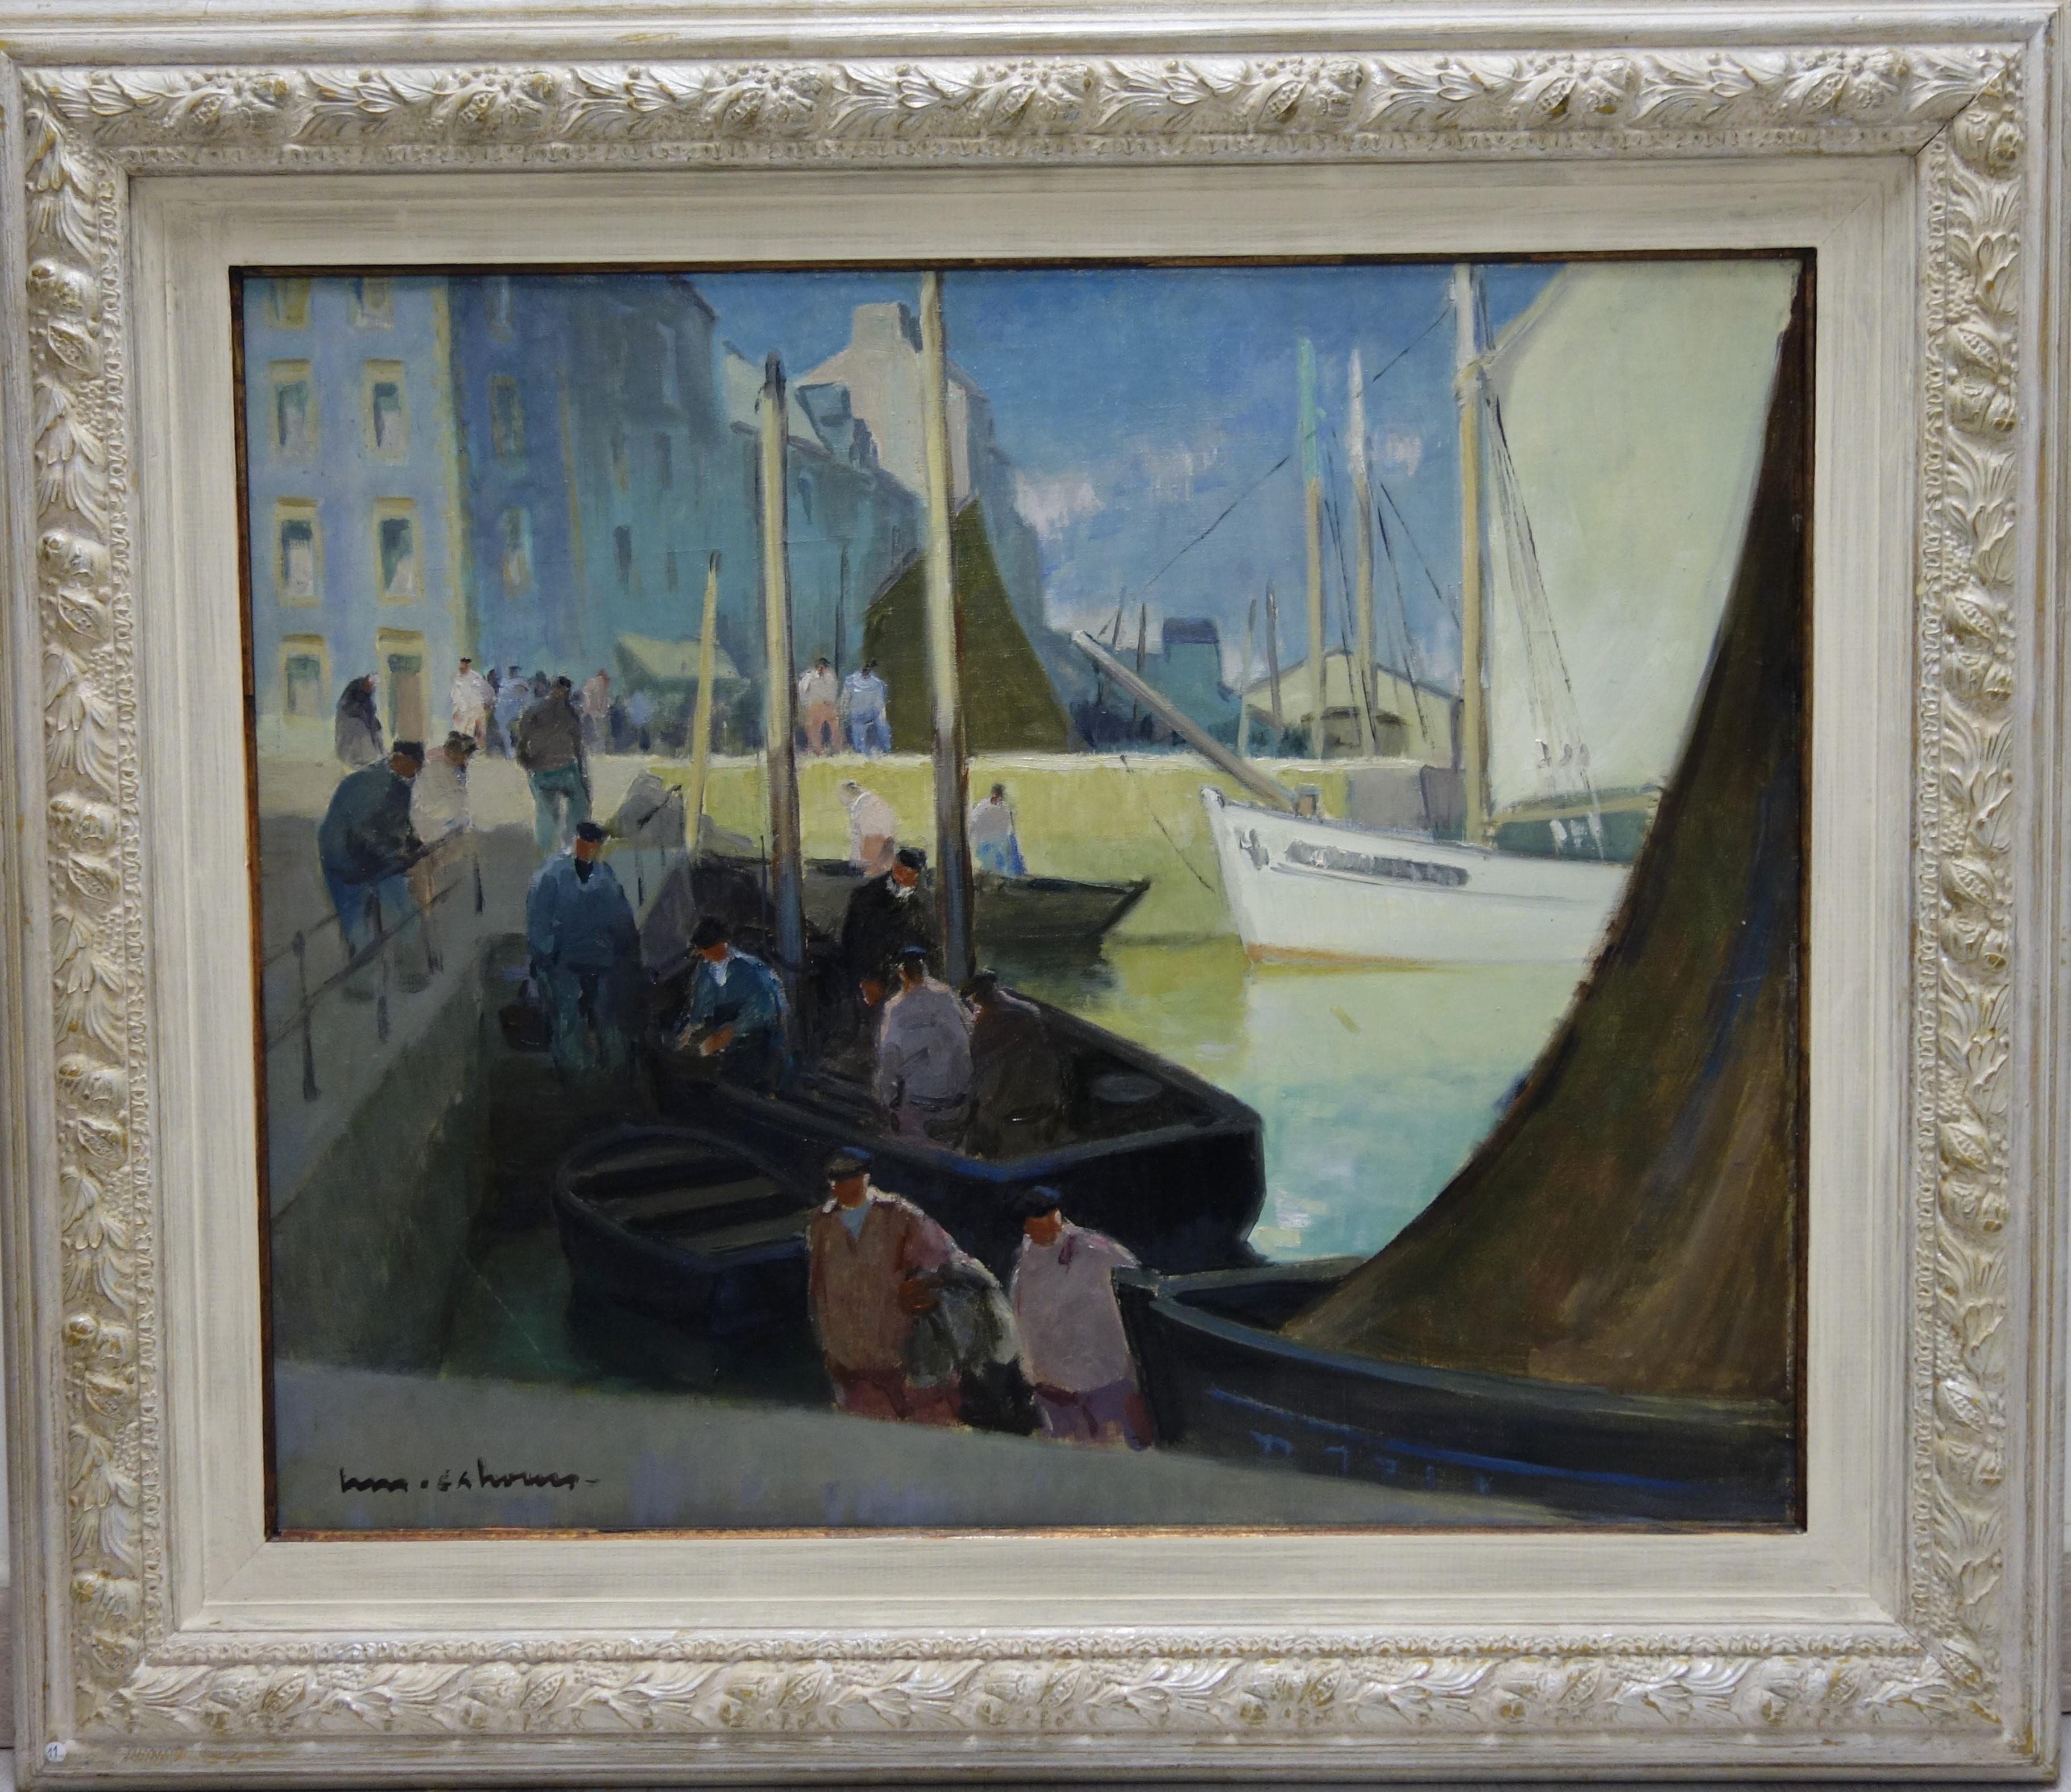 Henry Maurice CAHOURS Landscape Painting - Boat, Port, France "L'arrivée au port" Douarnenez" Oil cm.73 x 60  1922